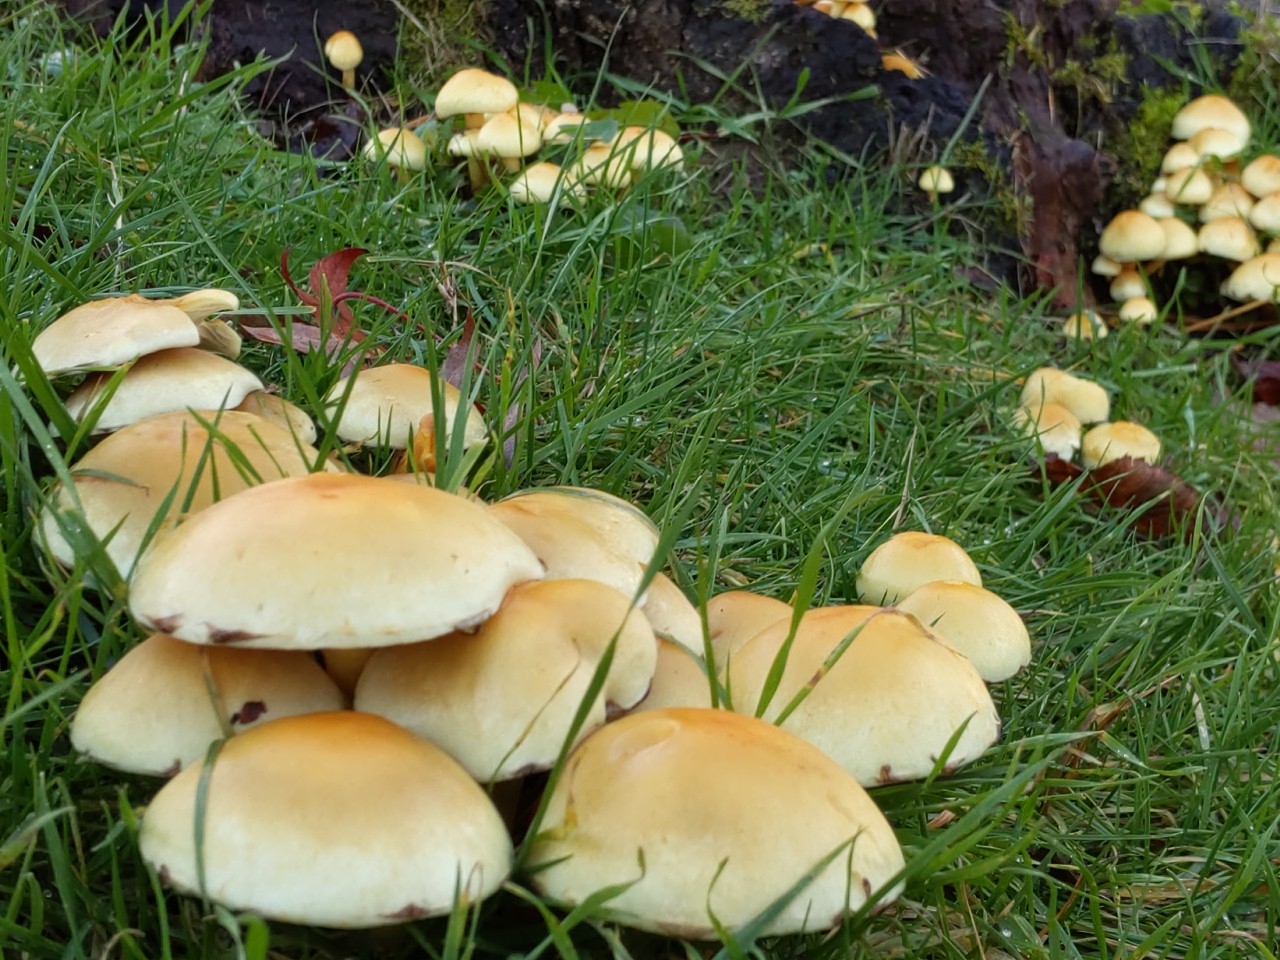 Mushrooooms